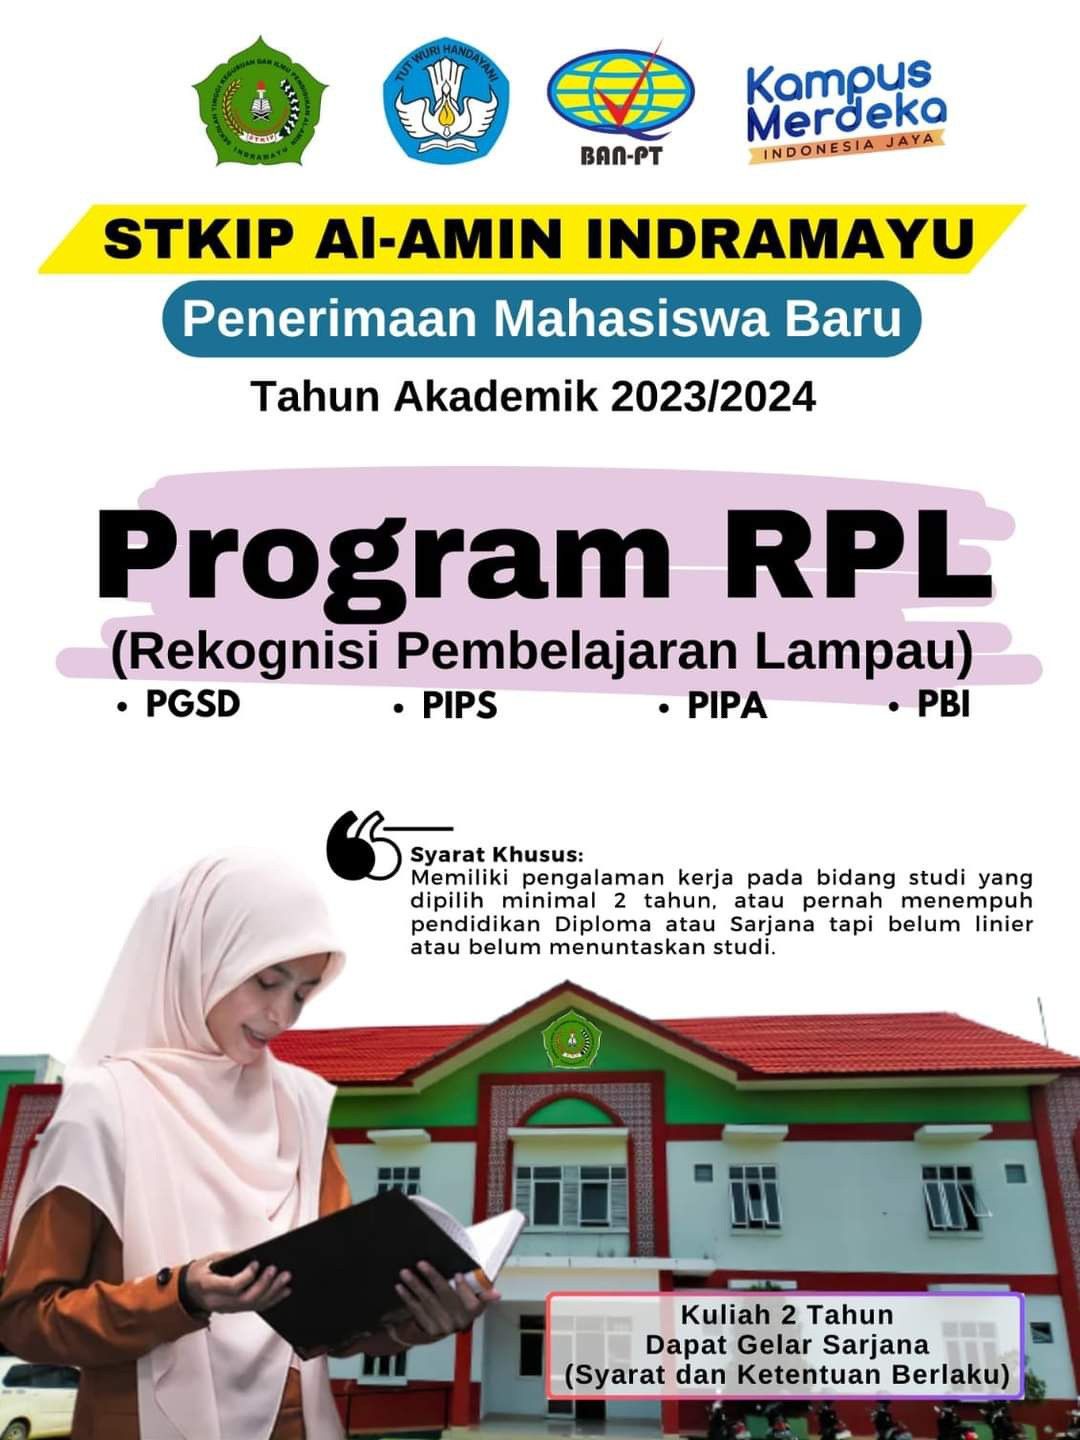 Penyelenggaraan Program Rekognisi Pembelajaran Lampau (RPL)